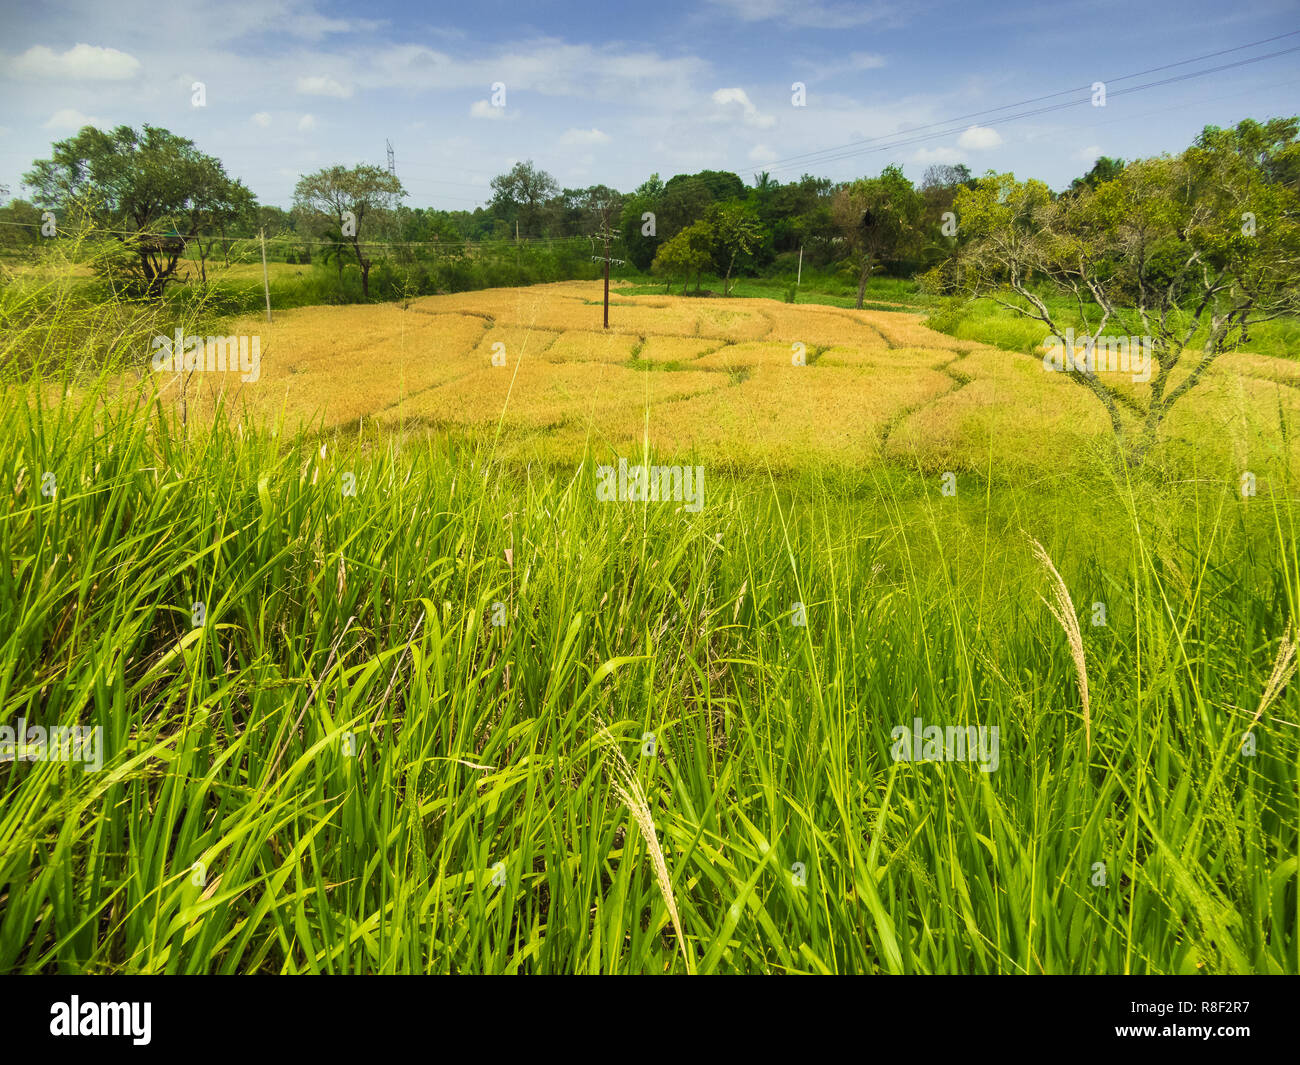 Les rizières, Sri Lanka. Floraison maturité de récolte du riz en attente. Les pousses vertes contraste avec la couleur d'or de la zone recadrée en arrière-plan. Banque D'Images